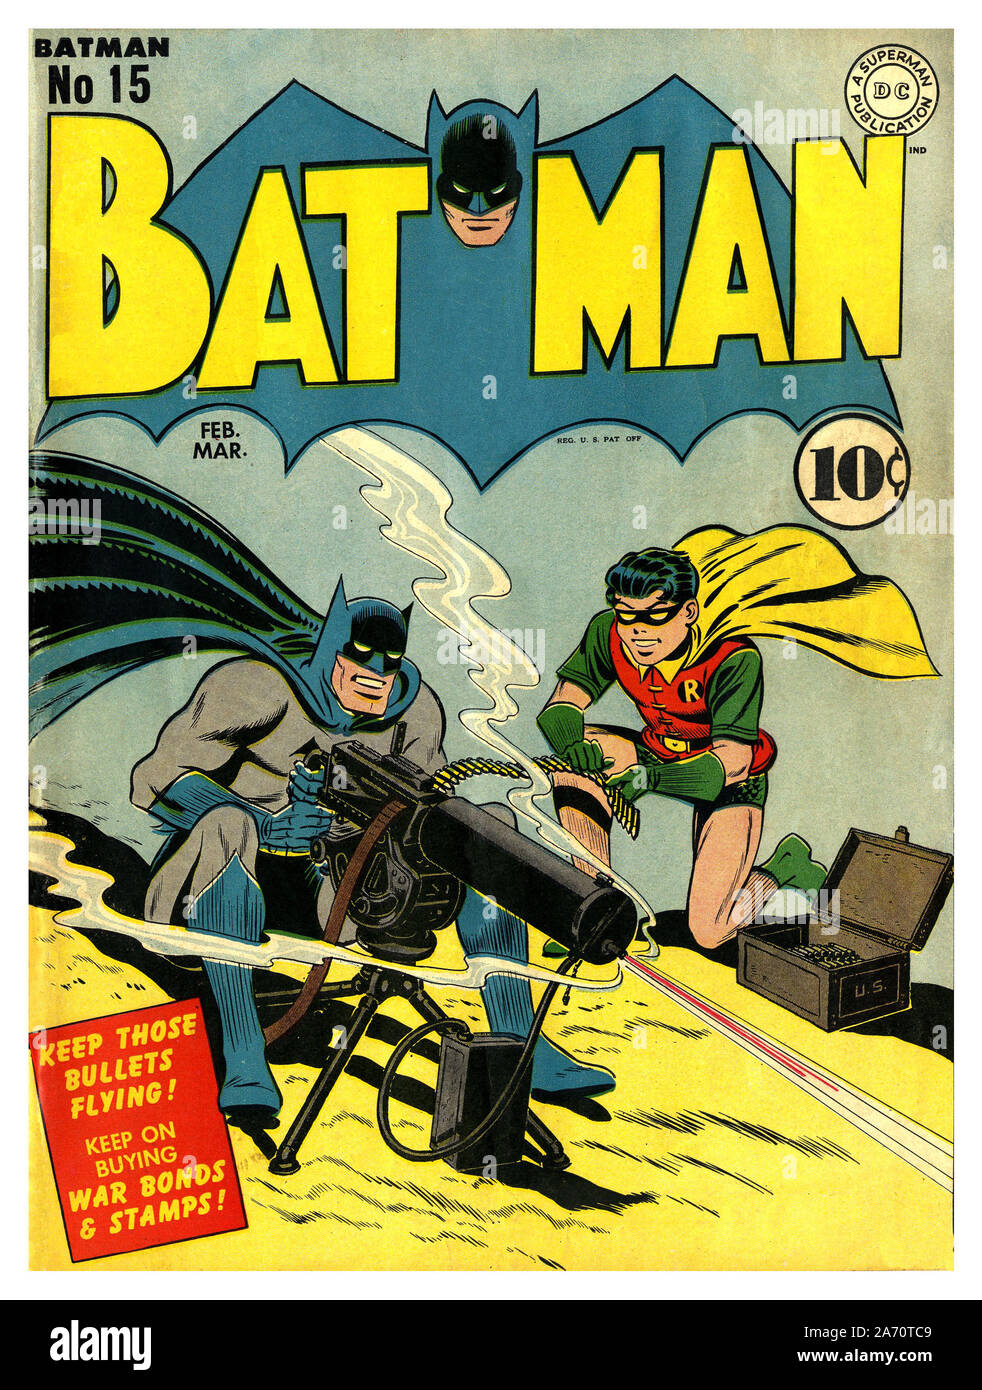 Vintage Comic 1940's American WW2 BATMAN PROPAGANDA CÓMICO no15 Ficticio Super Hero Batman y Robin ilustró disparar una ametralladora 'mantener esas balas volando seguir comprando bonos de guerra y sellos' 10c precio etiqueta EE.UU. Segunda Guerra Mundial Foto de stock